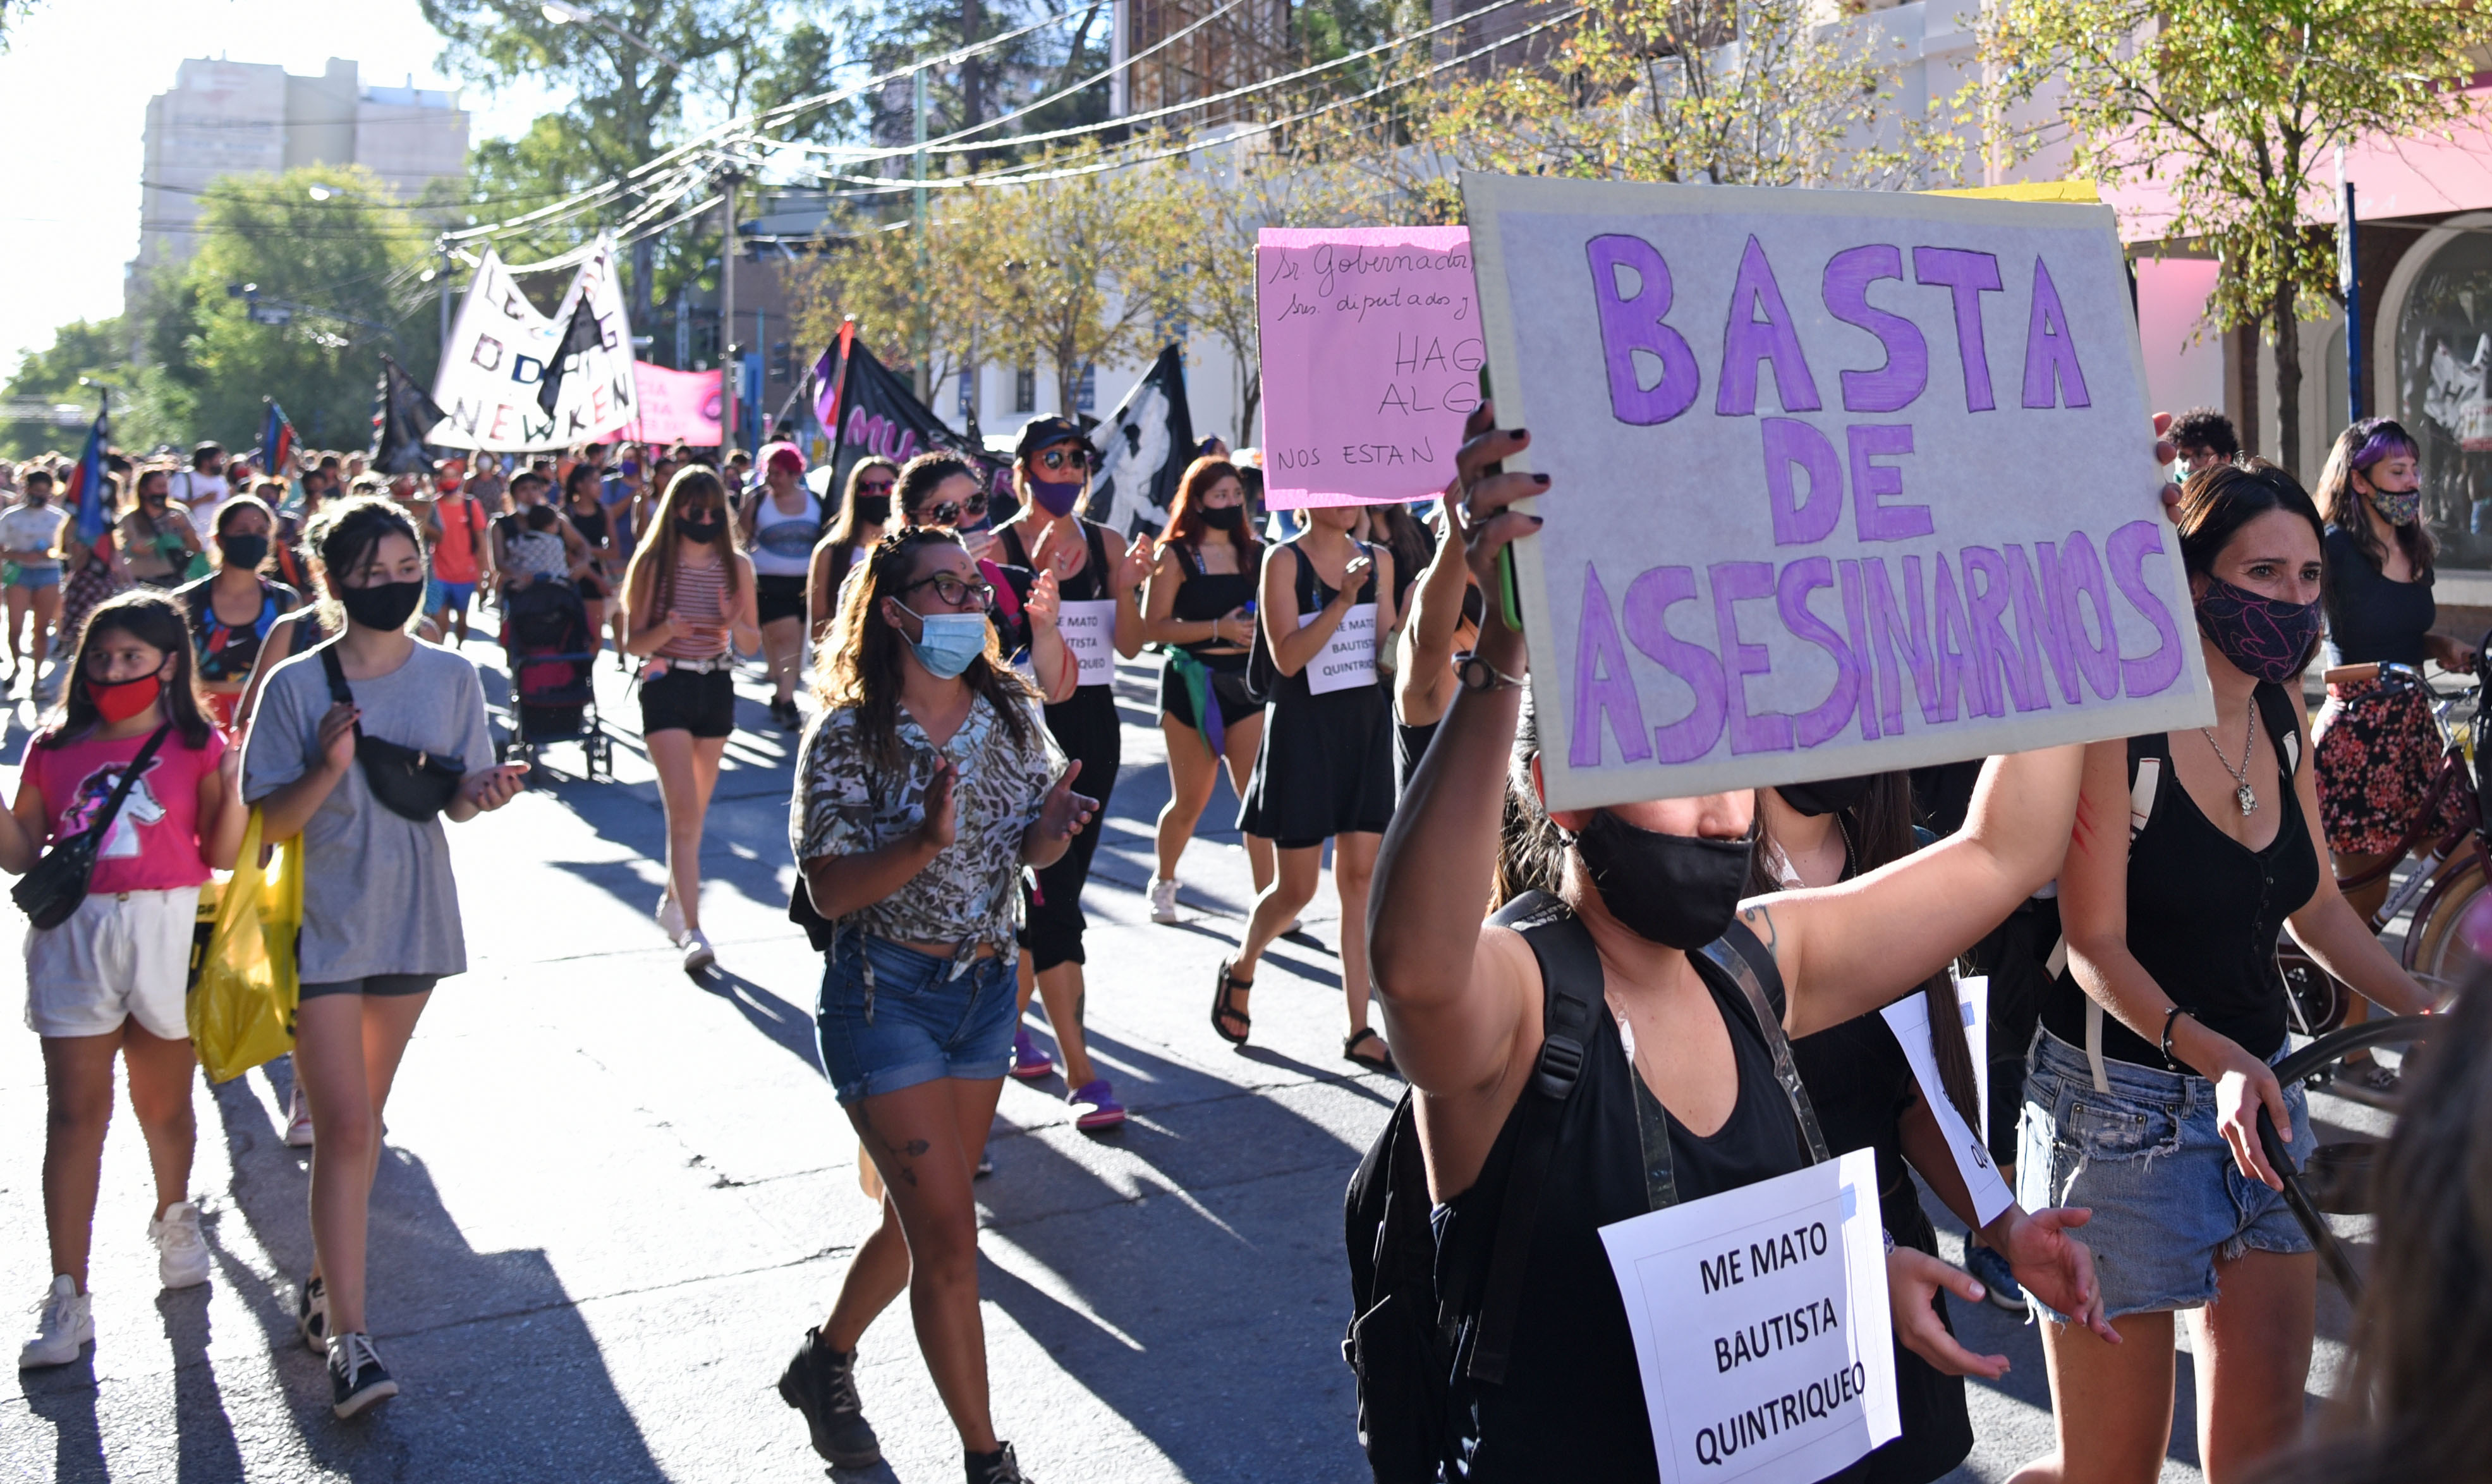 Esta iniciativa surgió luego del femicidio de Guadalupe Curual, que había denunciado reiteradamente a su agresor. Foto Florencia Salto.